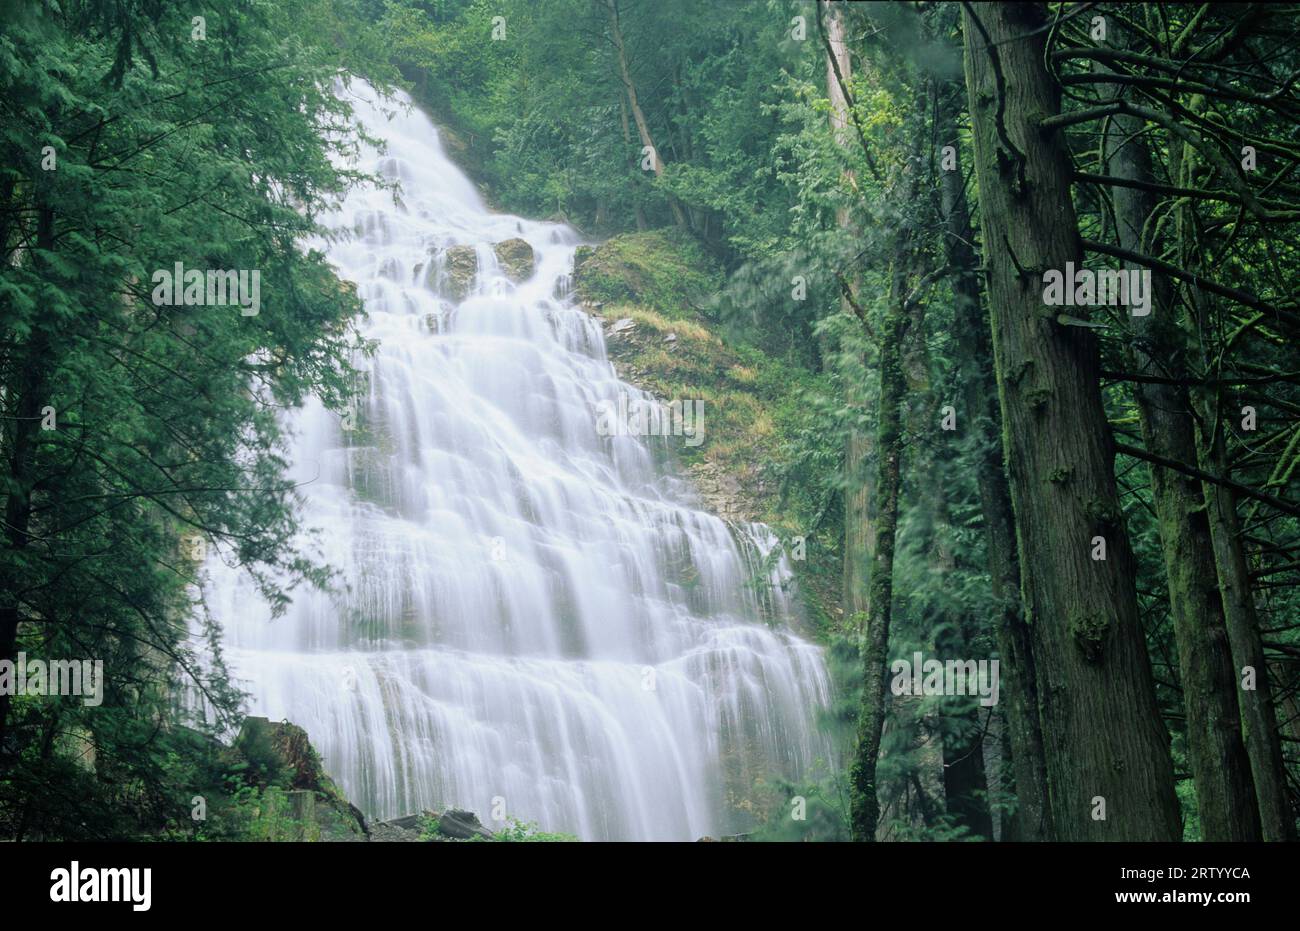 Bridal Veil Falls, Bridal Veil Falls Provincial Park, British Columbia, Canada Stock Photo